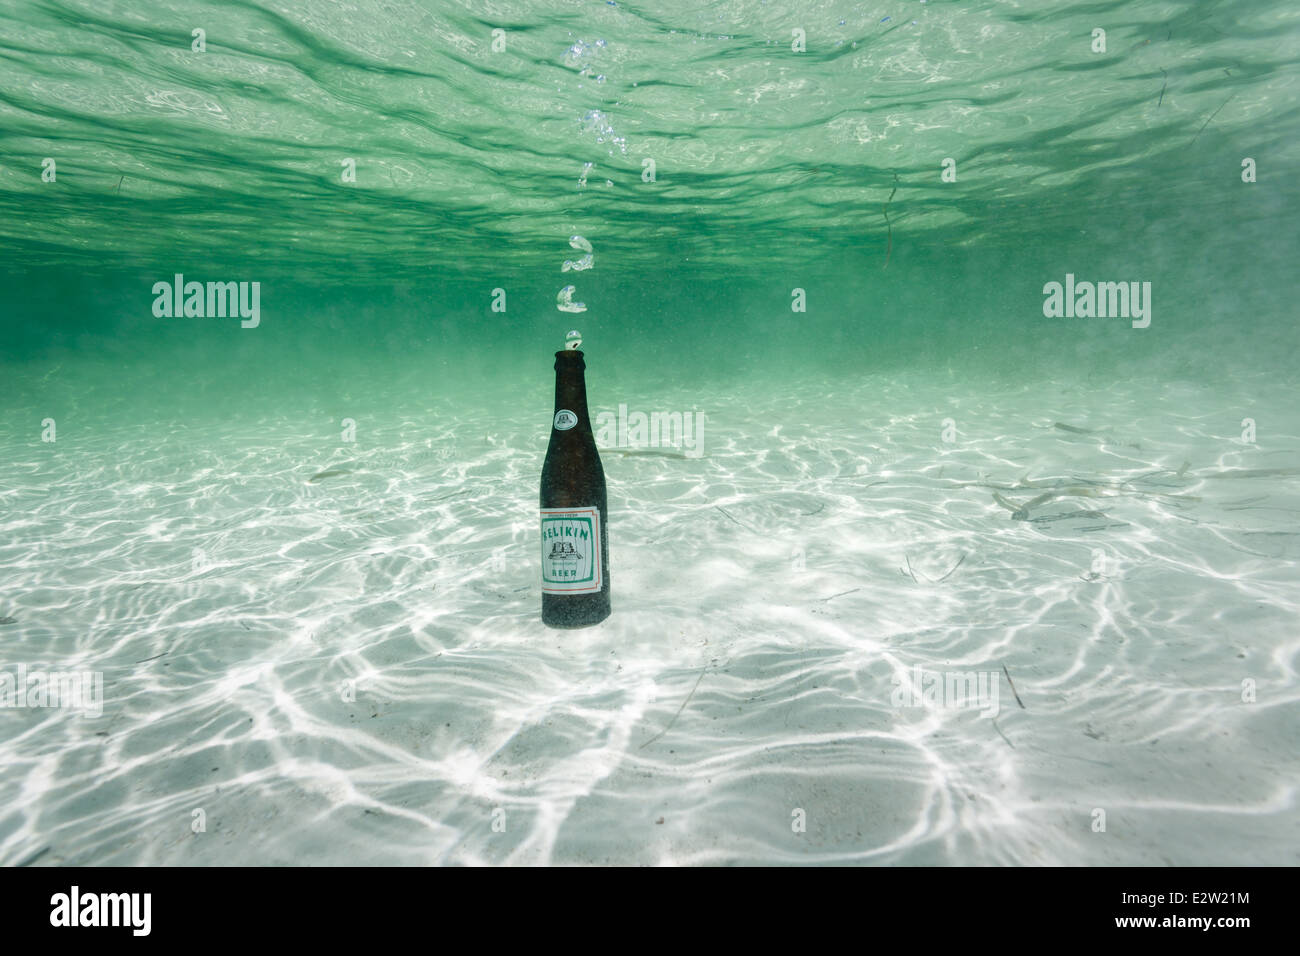 Belikin Bierflasche auf weißem Sand auf Unterseite des klare türkisblaue Meer bläst Seifenblasen beim Einfüllen des Wassers Stockfoto